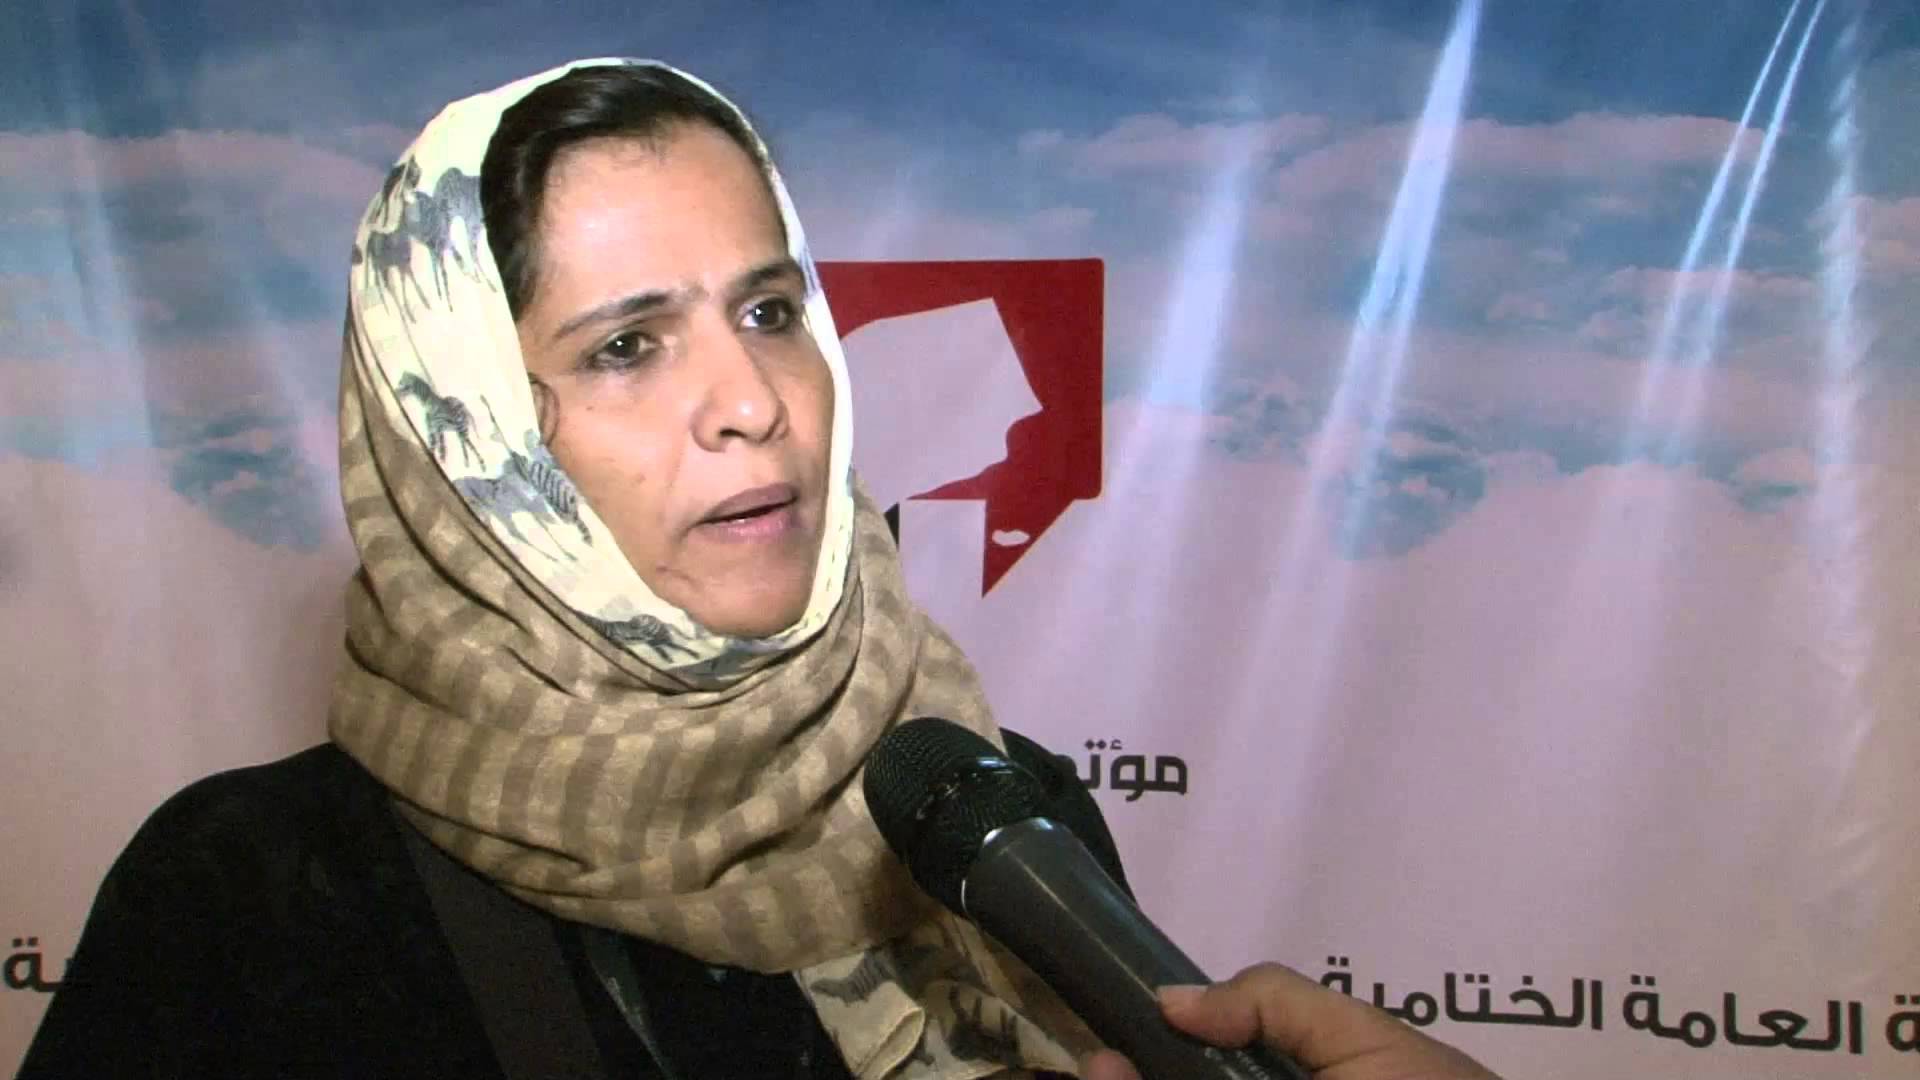   وزيرة حقوق الإنسان في صنعاء تستقيل بعد اعتداء الحوثيين عليها